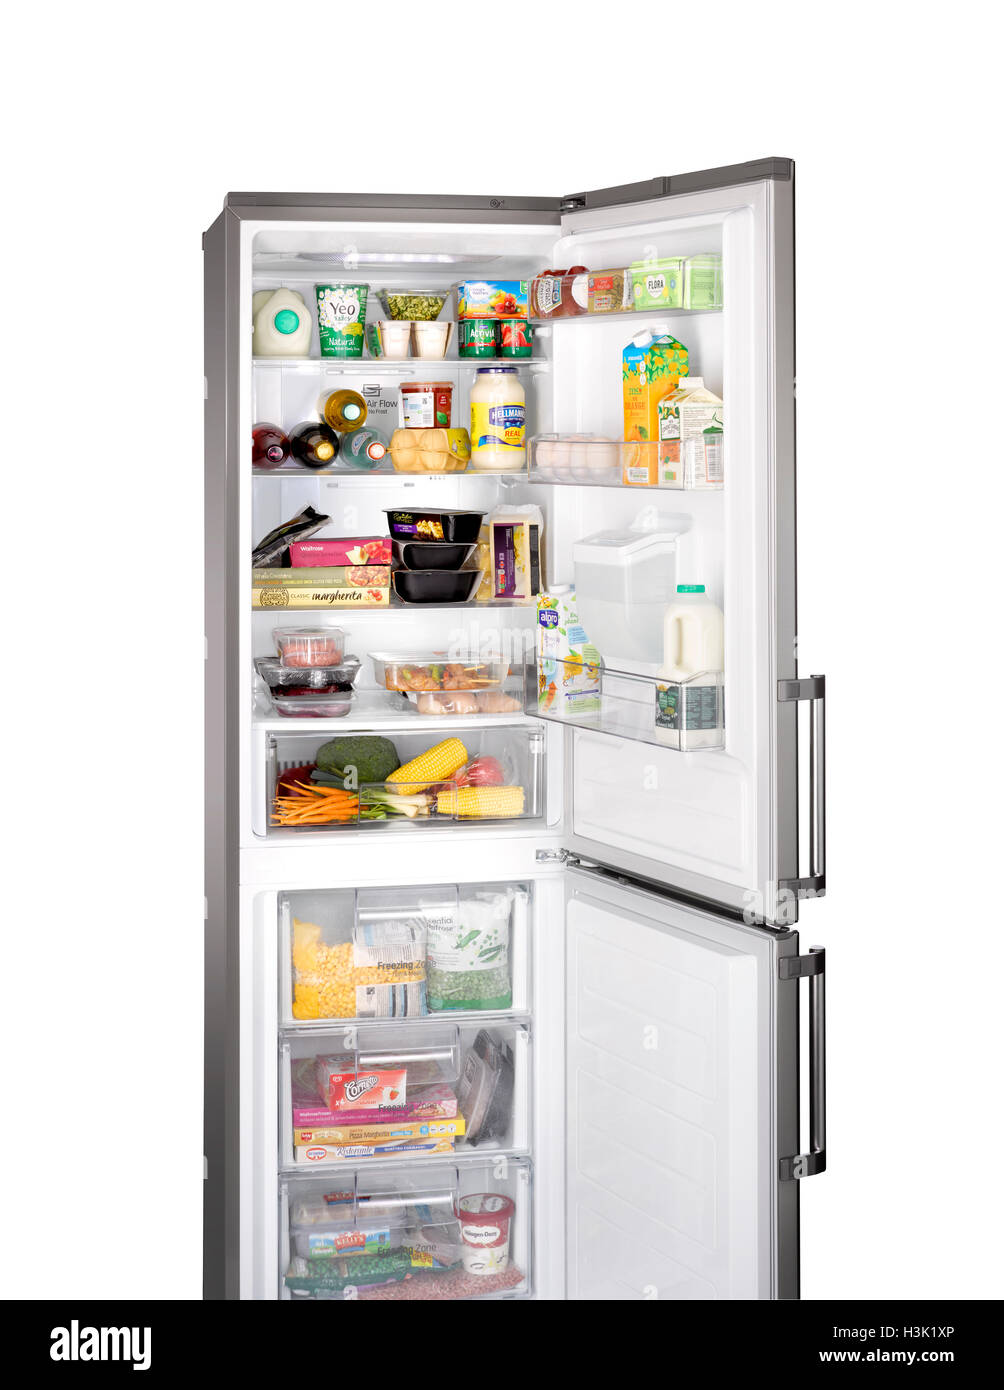 https://c8.alamy.com/comp/H3K1XP/a-cut-out-shot-of-an-open-fridge-freezer-H3K1XP.jpg